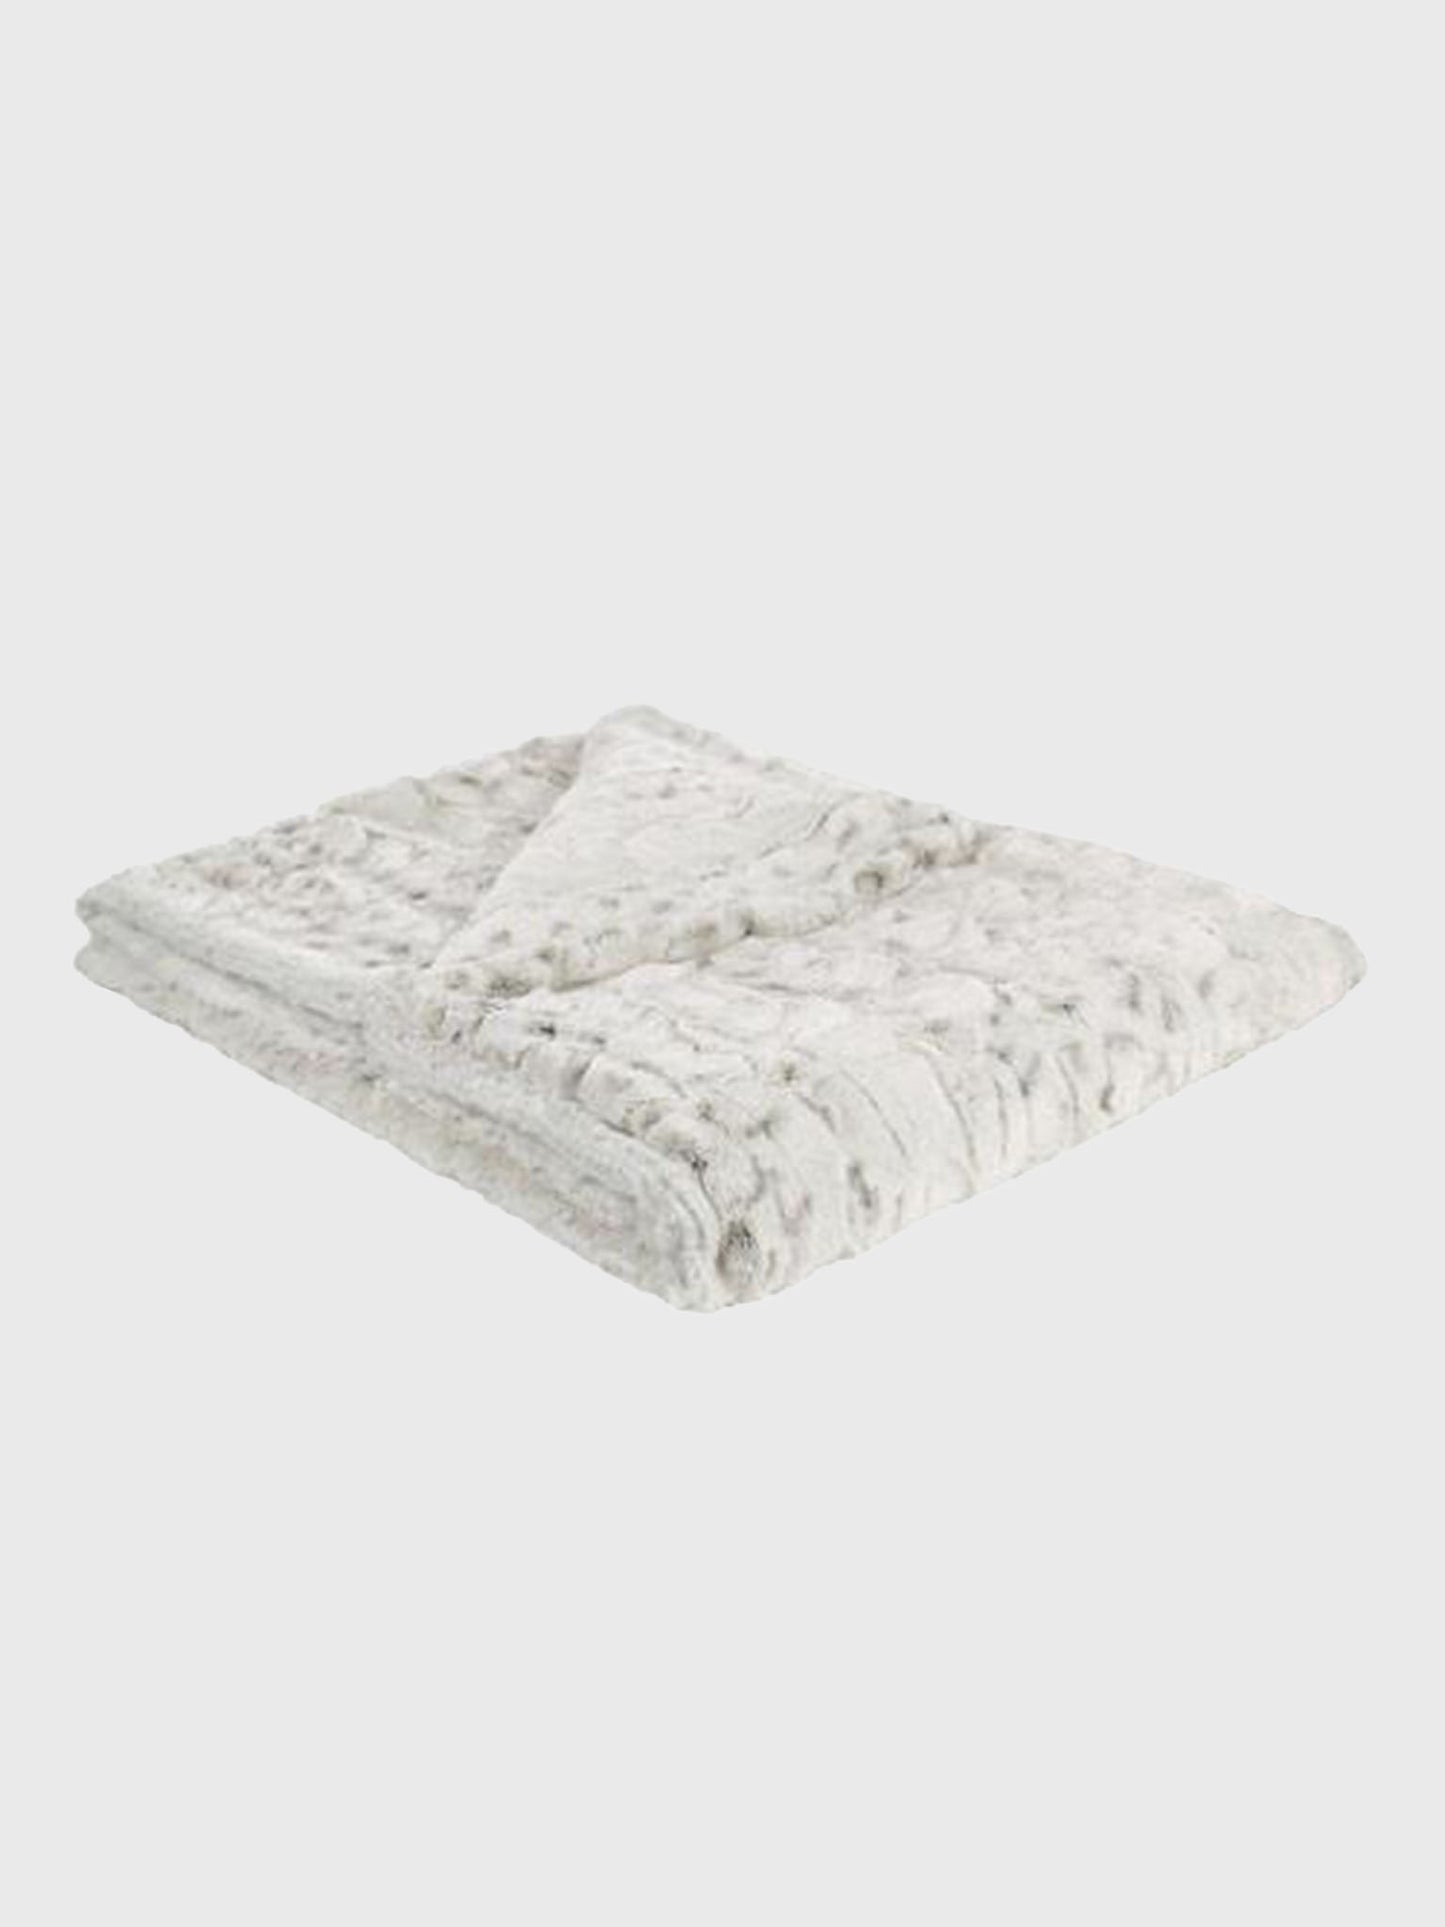 Pandemonium Millinery Luxury Faux Fur In Winter Frost Blanket